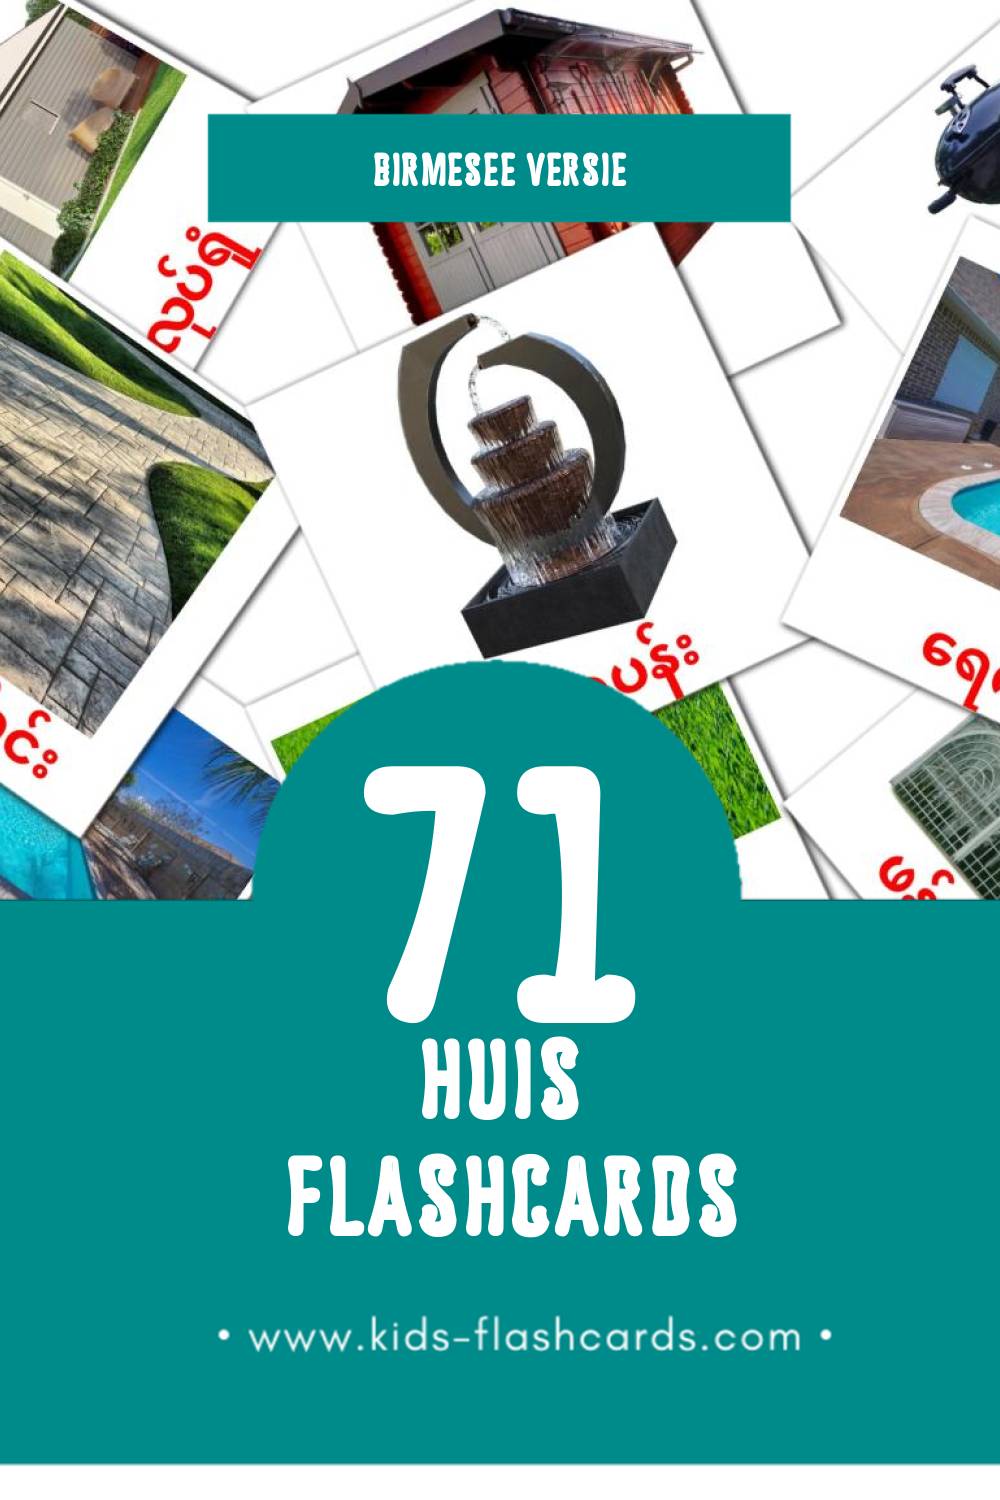 Visuele အိမ် Flashcards voor Kleuters (43 kaarten in het Birmese)